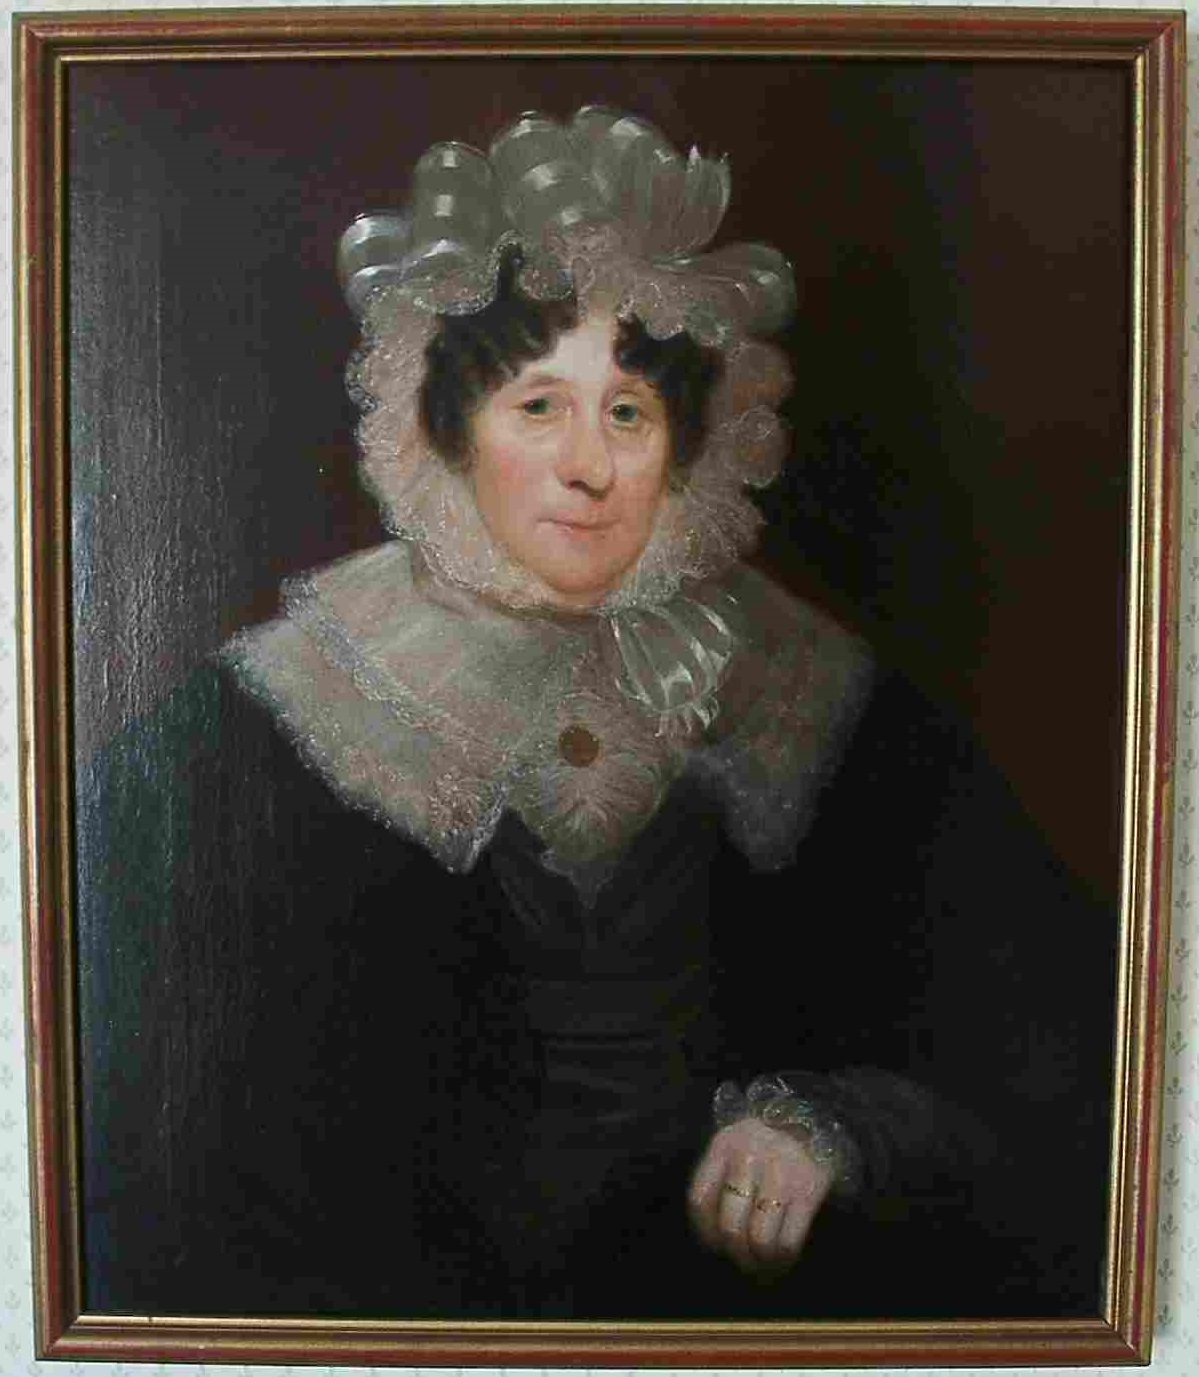 Oil painting Susannah Sackree in gilt frame